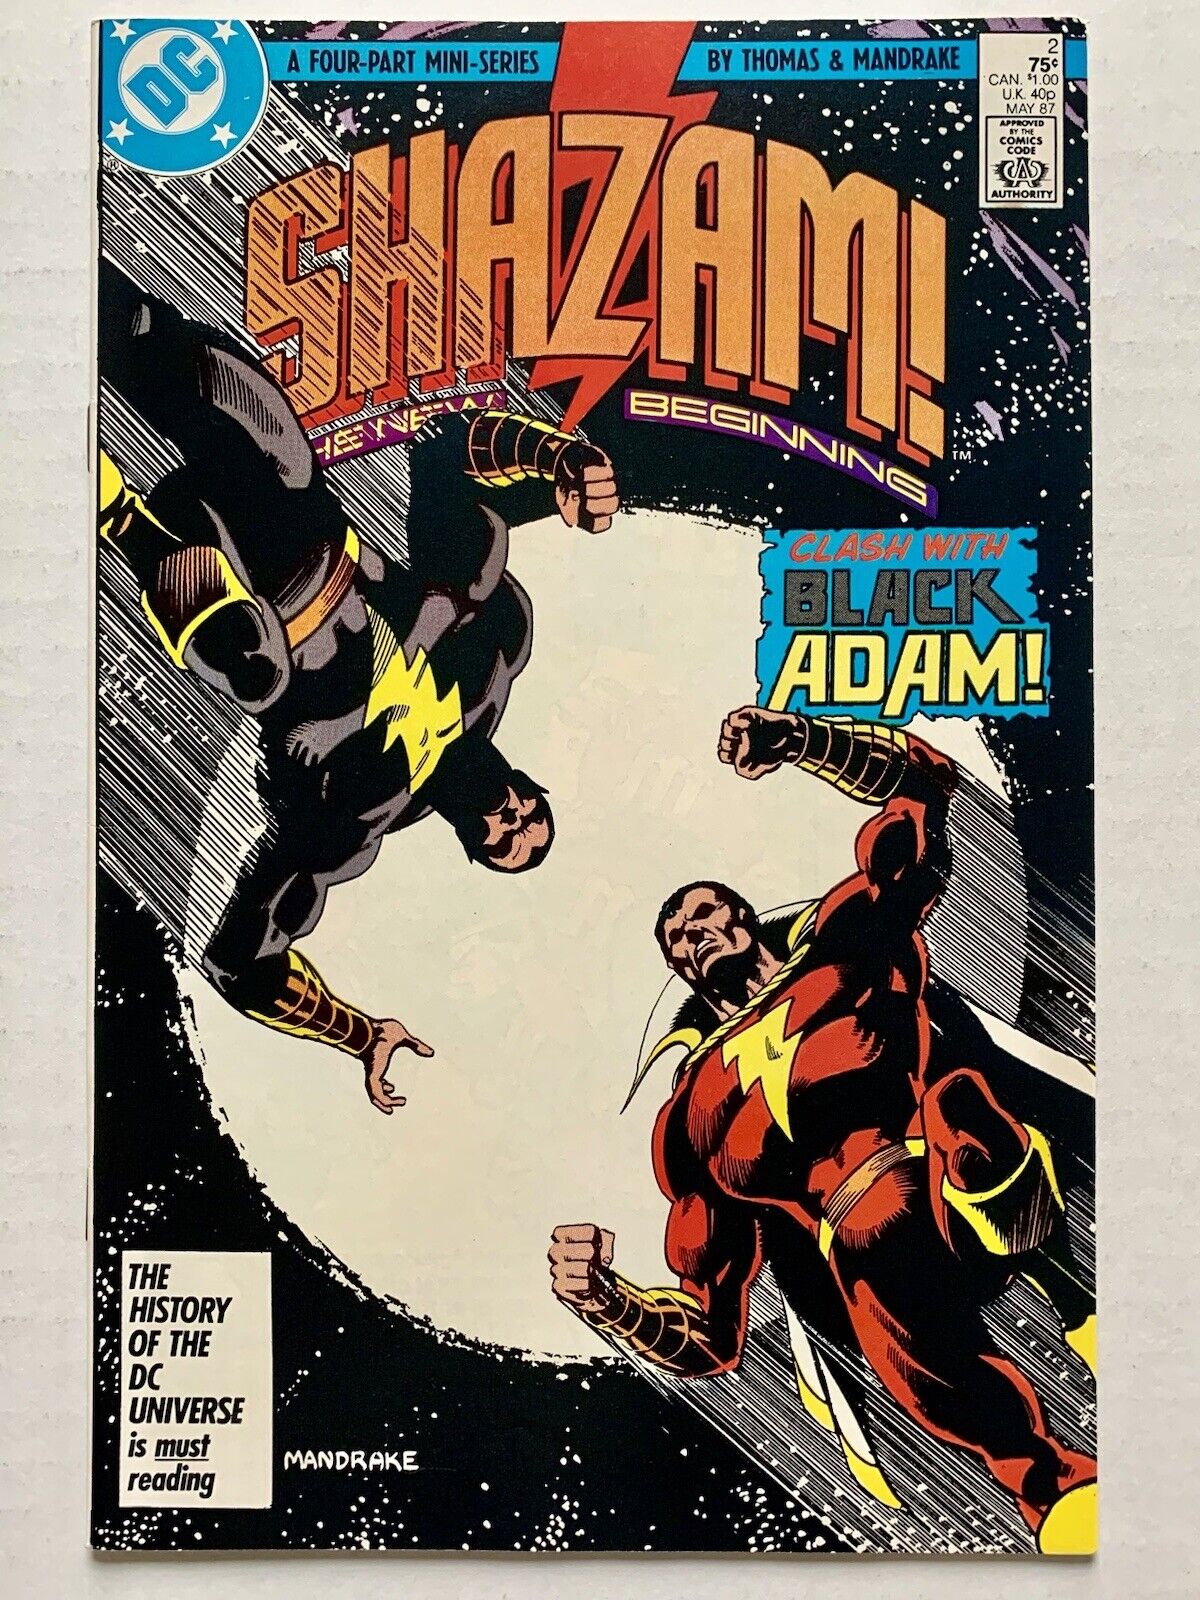 Shazam #2 (1987) The New Beginning -vs Black Adam (VF/8.0) -KEY DC -VINTAGE